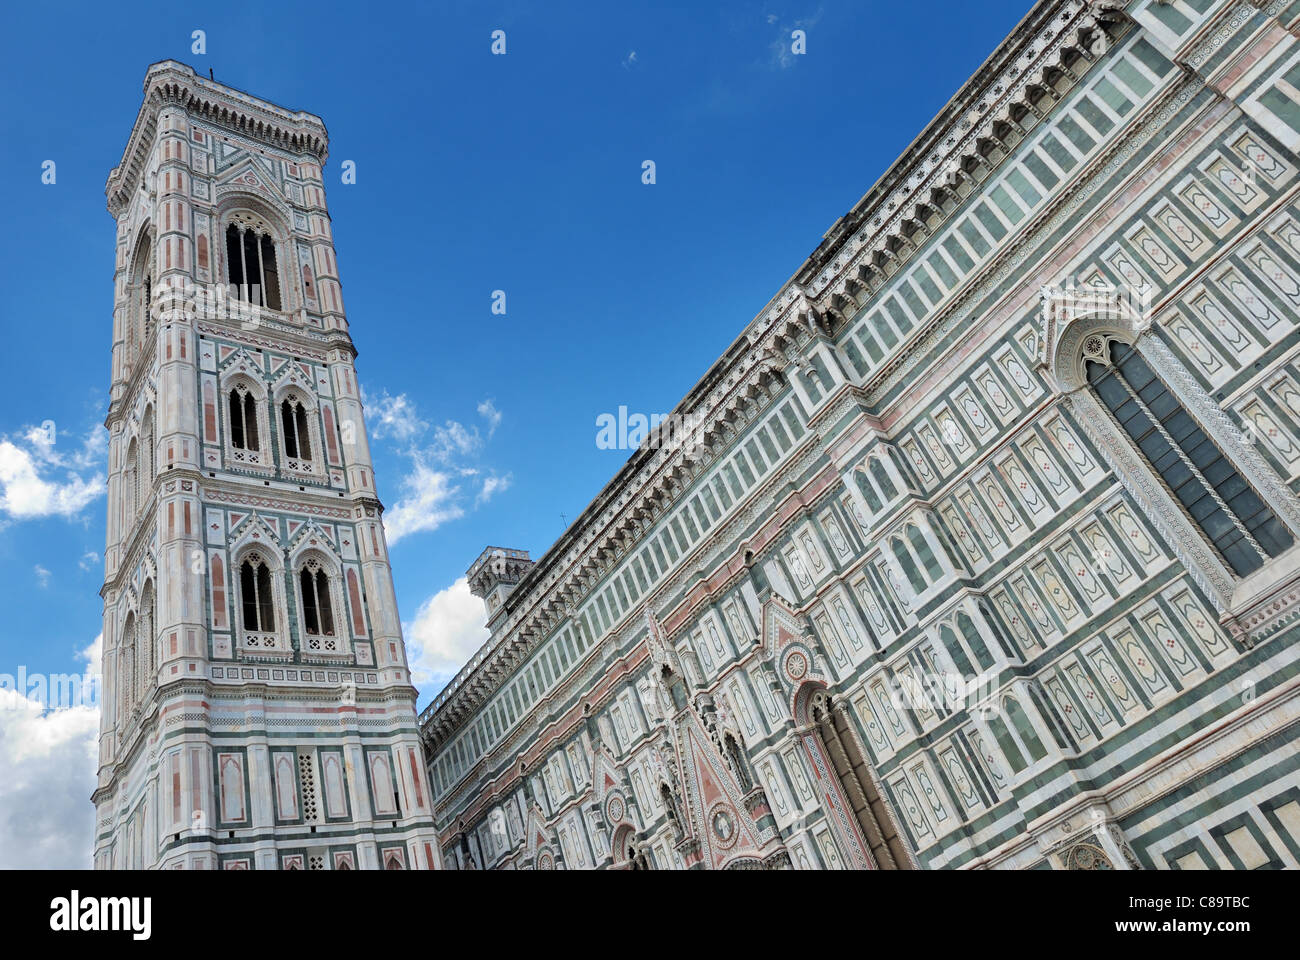 Basilica di Santa Maria del Fiore a Florencia, Italiy. Foto Stock